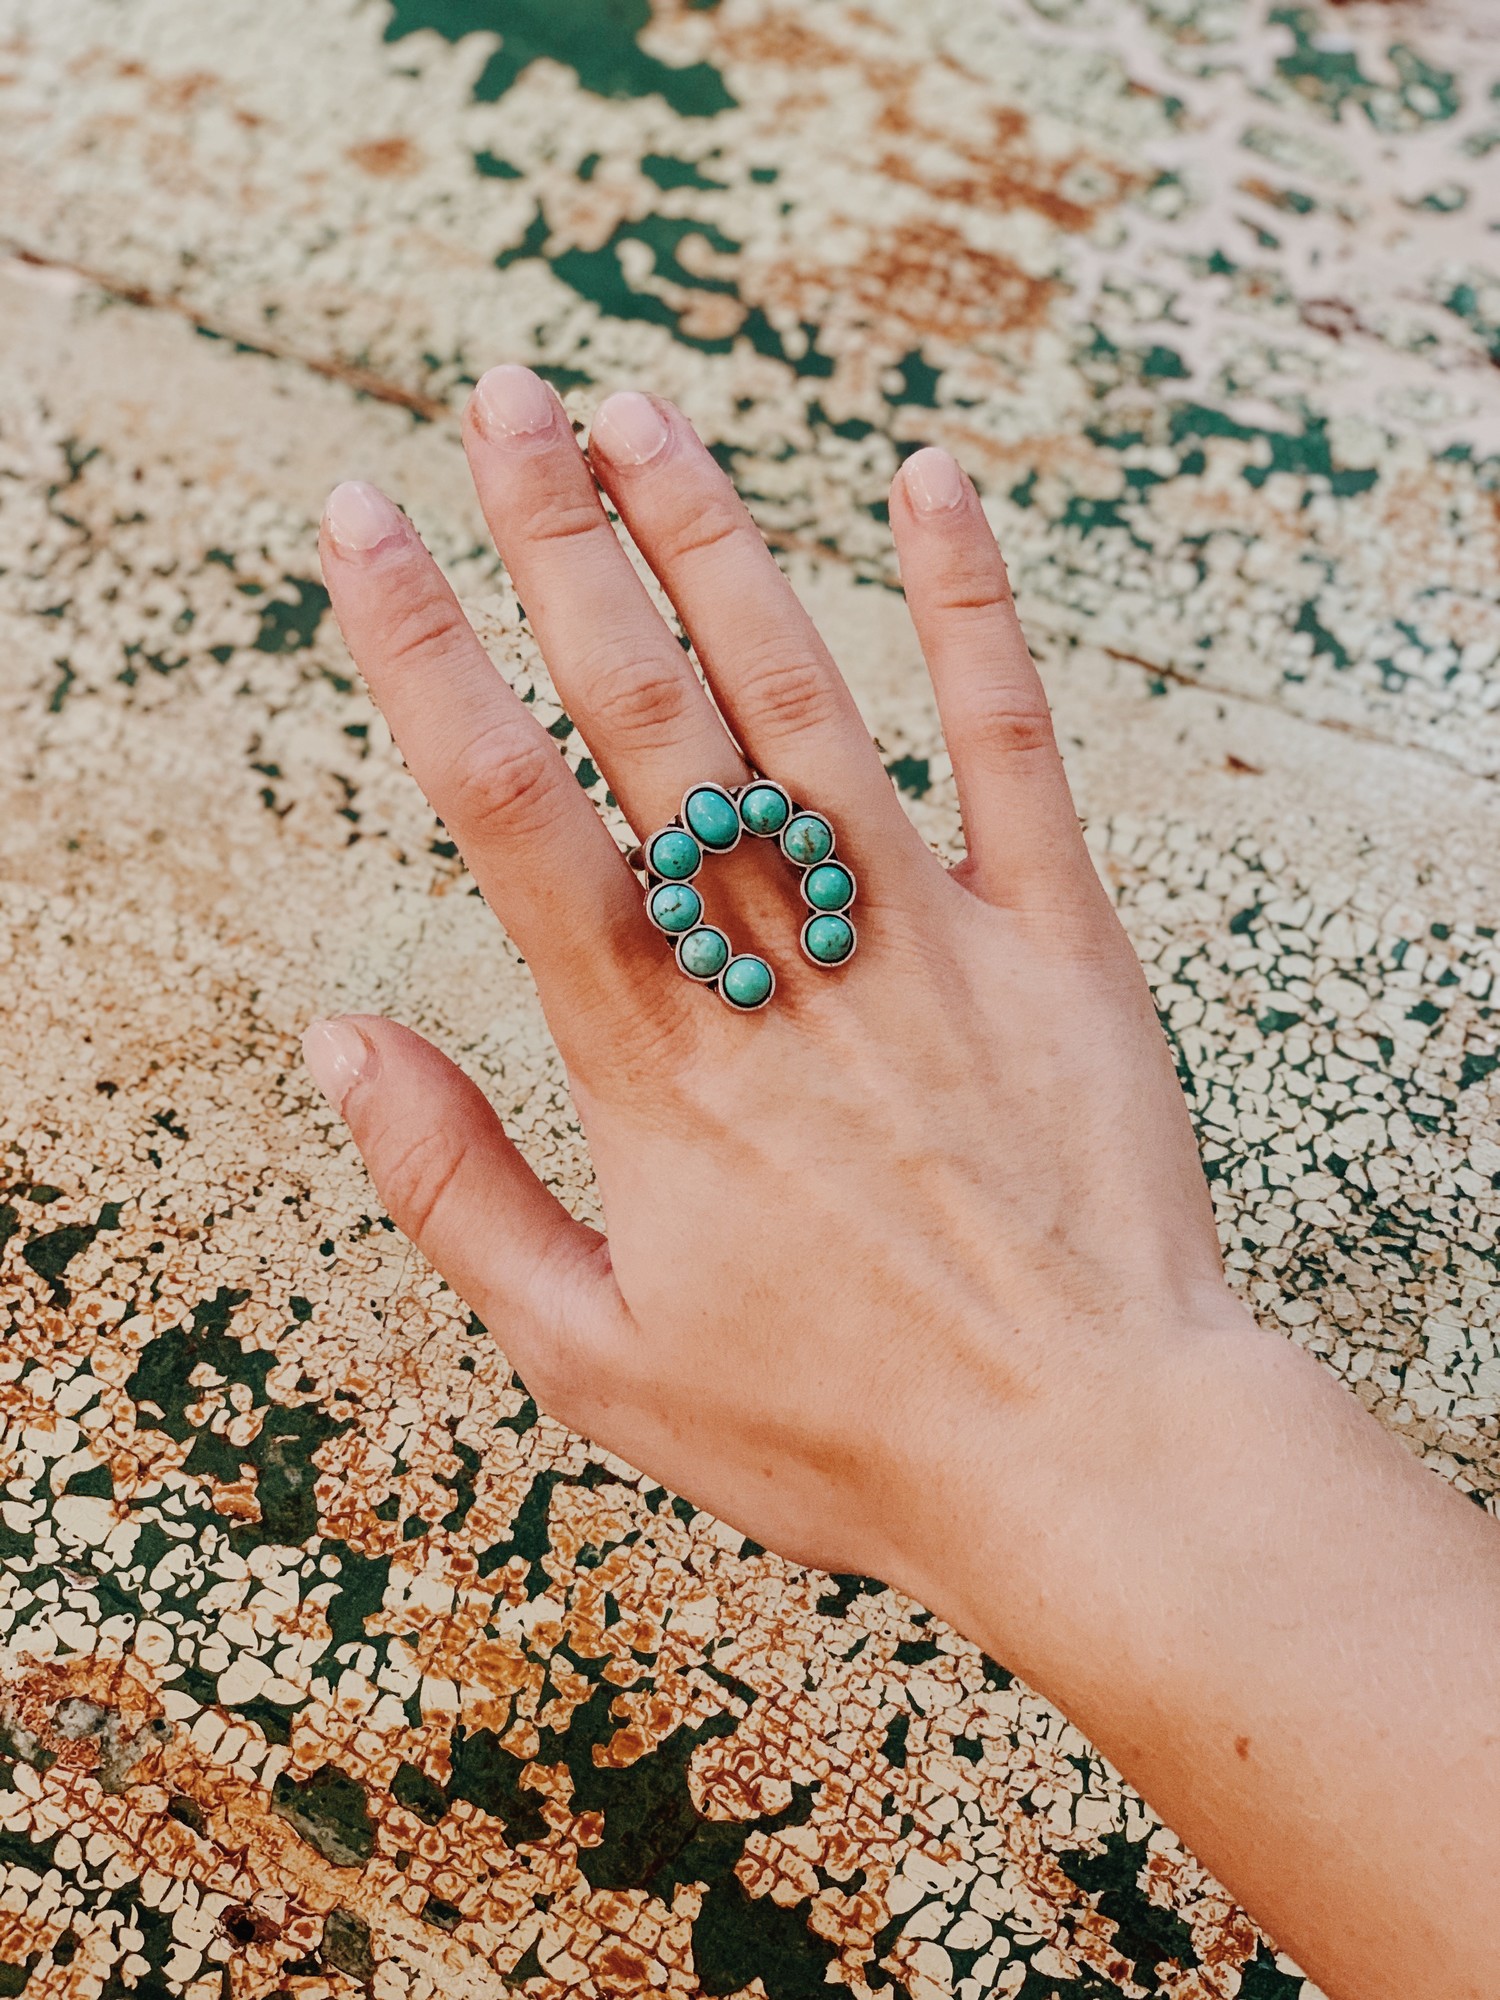 Boho Turquoise Stone Horseshoe Ring. Adjustable For size.